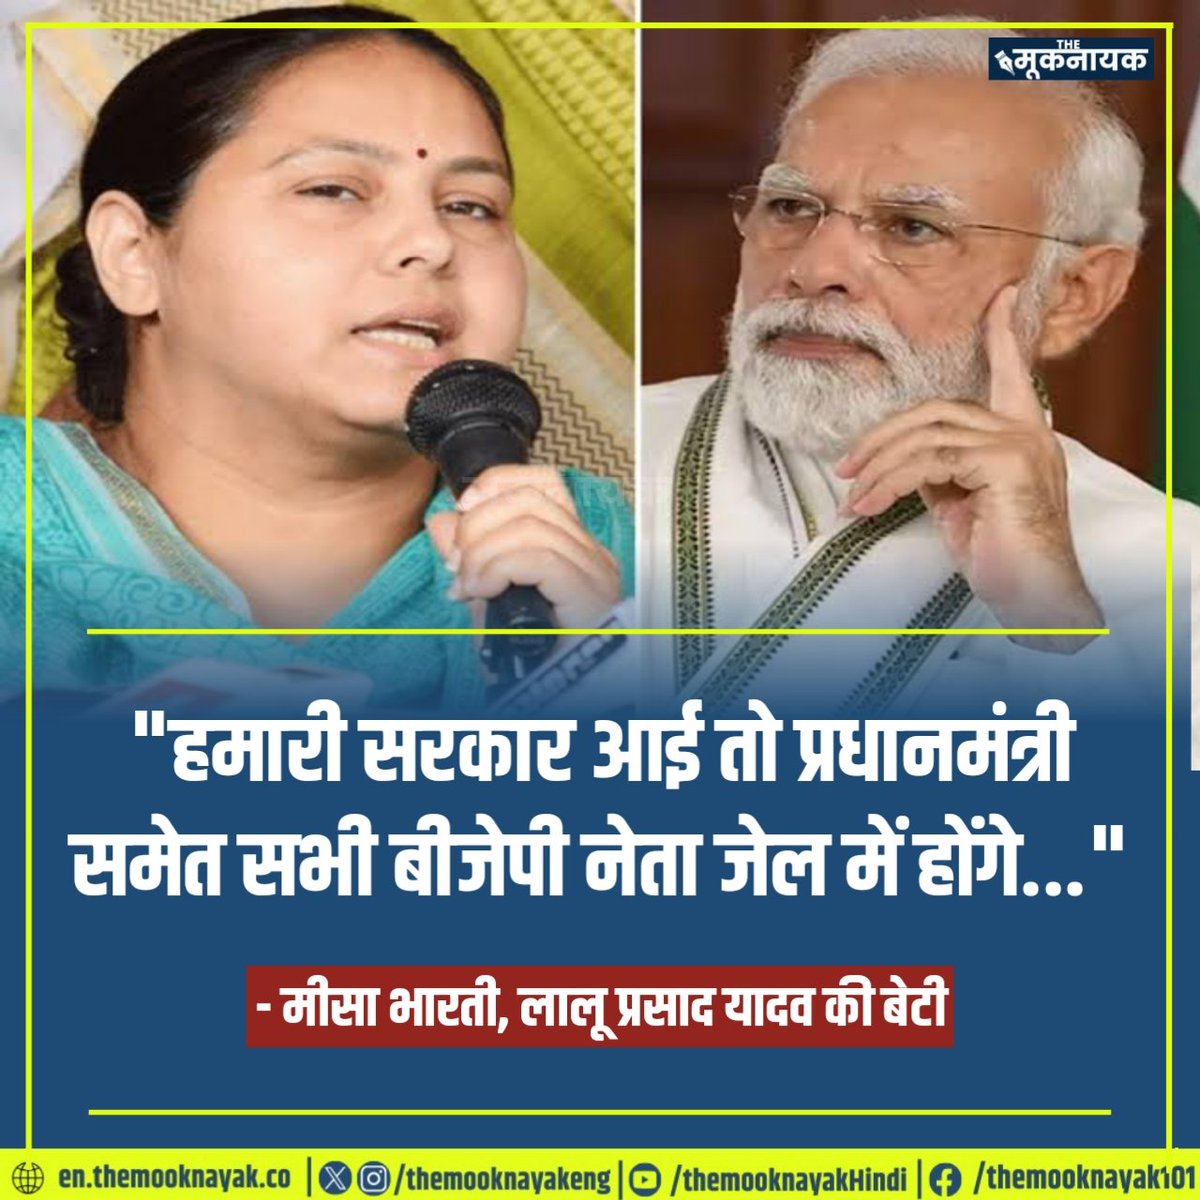 'हमारी सरकार आई तो प्रधानमंत्री समेत सभी बीजेपी नेता जेल में होंगे...' - मीसा भारती, लालू प्रसाद यादव की बेटी